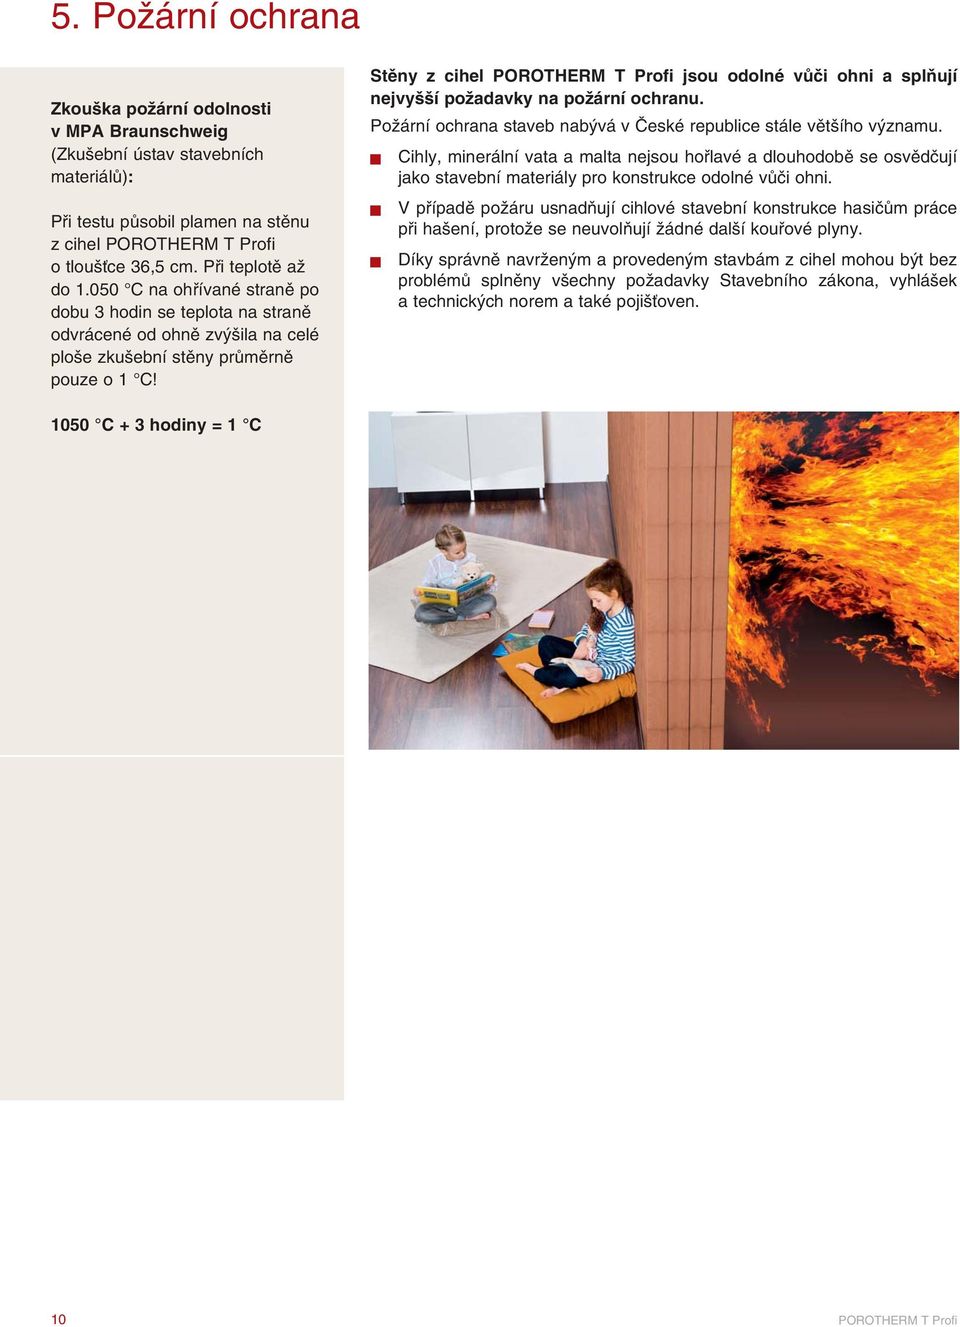 Stěny z cihel jsou odolné vůči ohni a splňují nejvyšší požadavky na požární ochranu. Požární ochrana staveb nabývá v České republice stále většího významu.